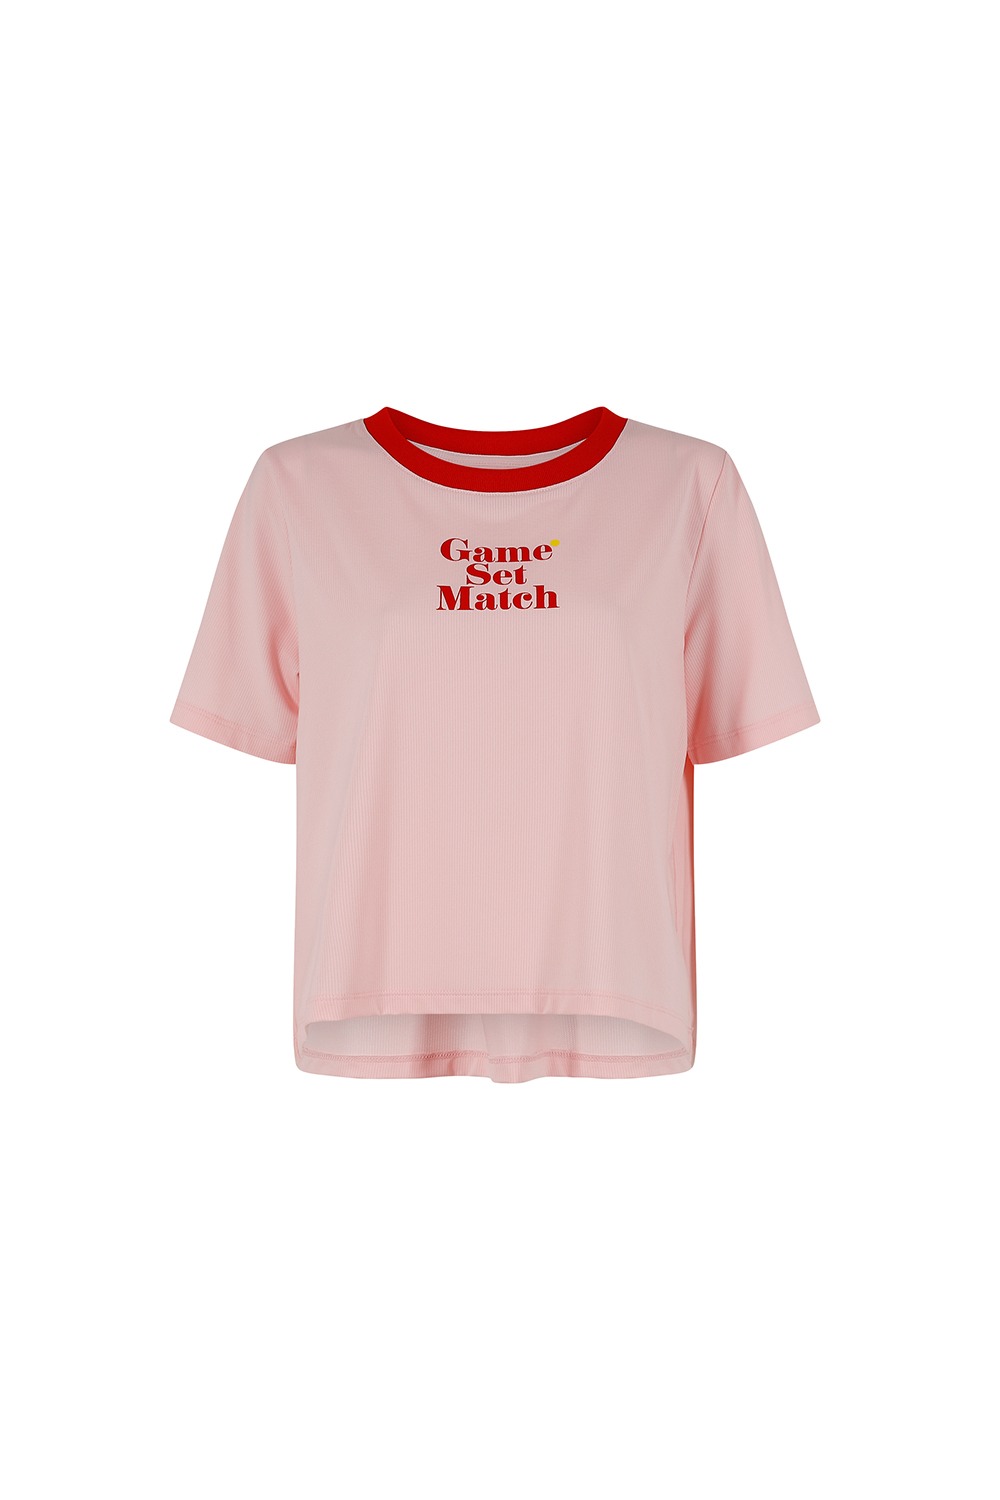 게임셋매치 퍼포먼스 드라이핏 티셔츠 (핑크) - 리치즈 RICHEZ